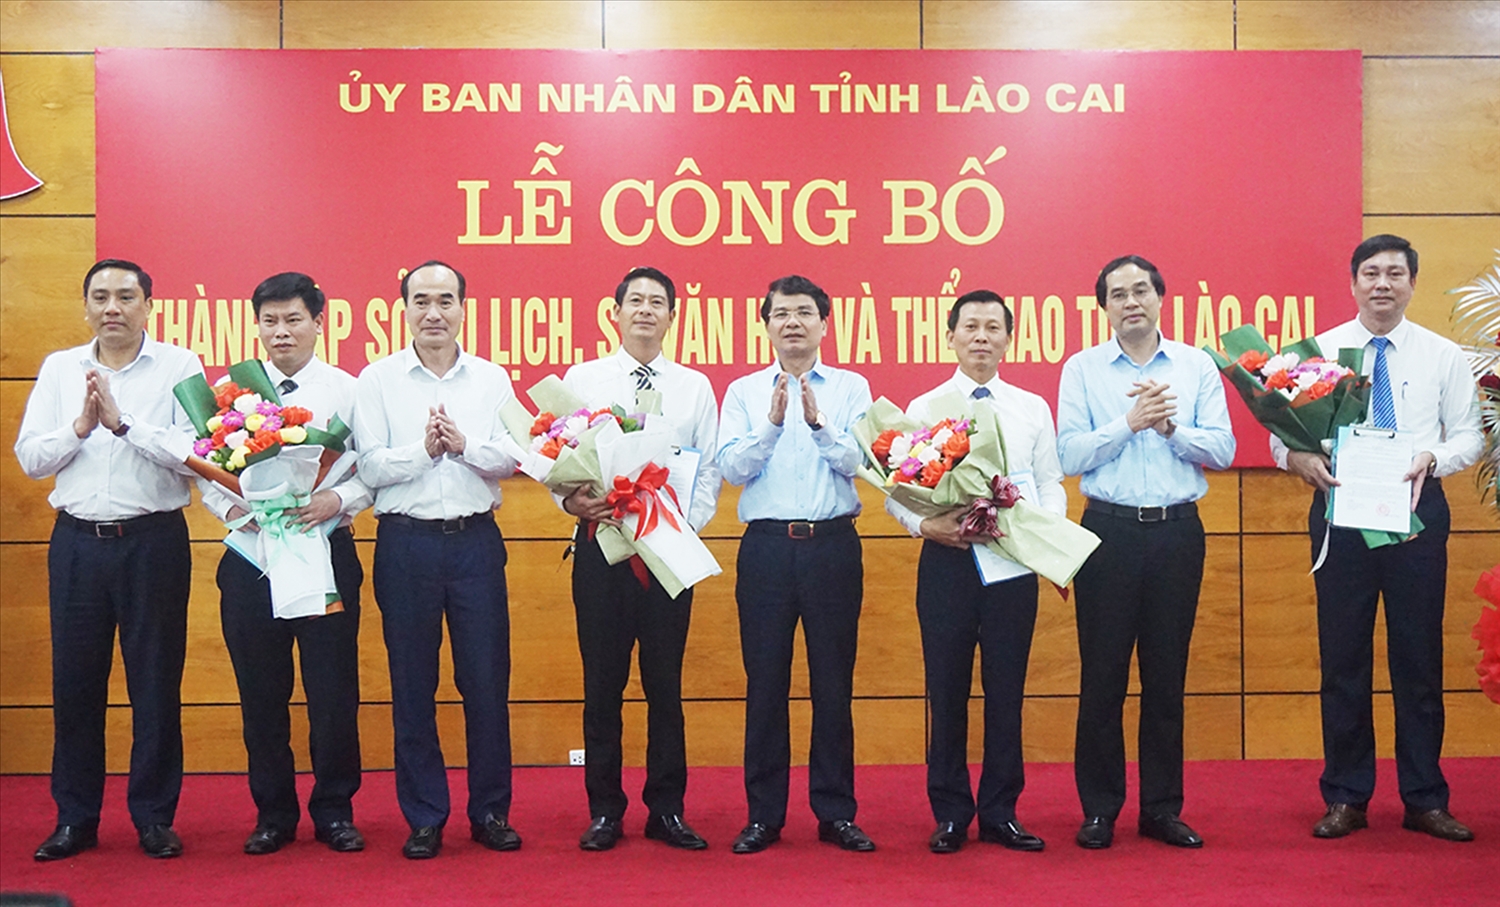 Lãnh đạo tỉnh Lào Cai trao các quyết định kiện toàn nhân sự Sở Văn hóa Thể thao và Sở Du lịch